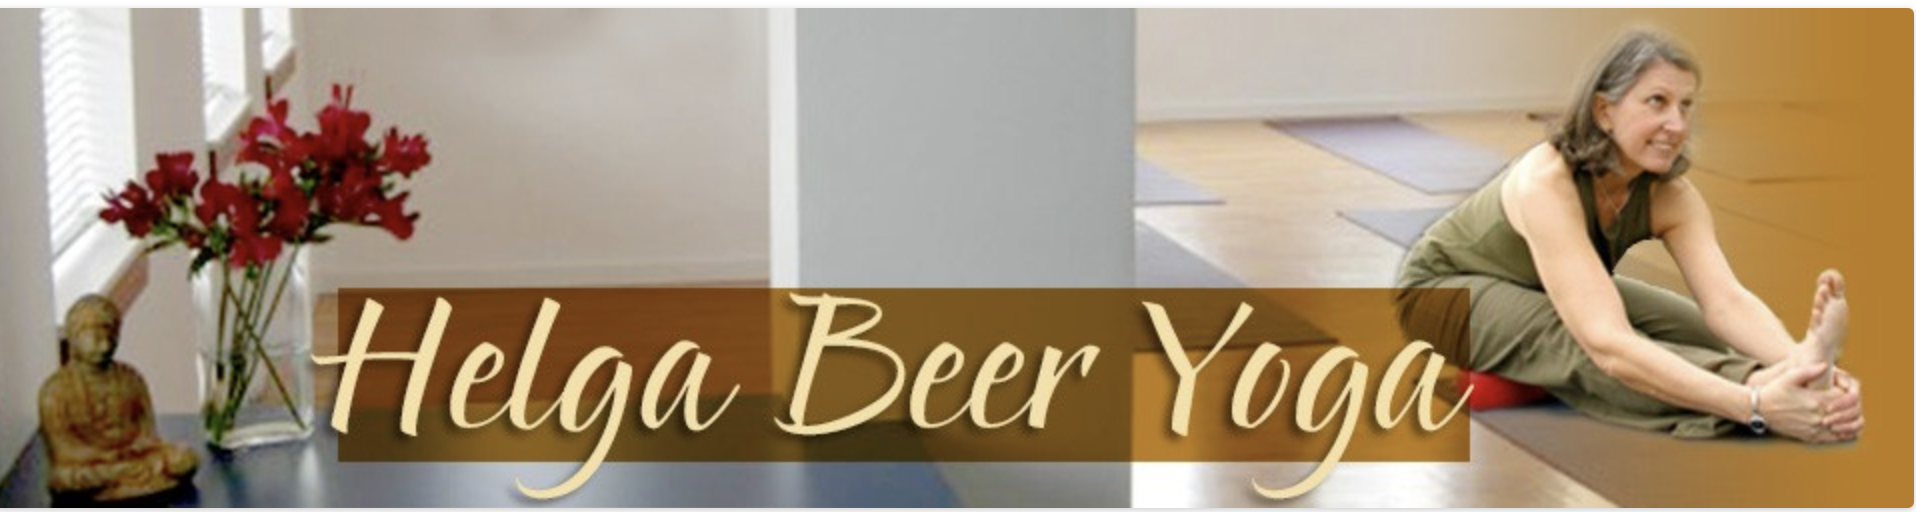 Helga Beer Yoga Victoria